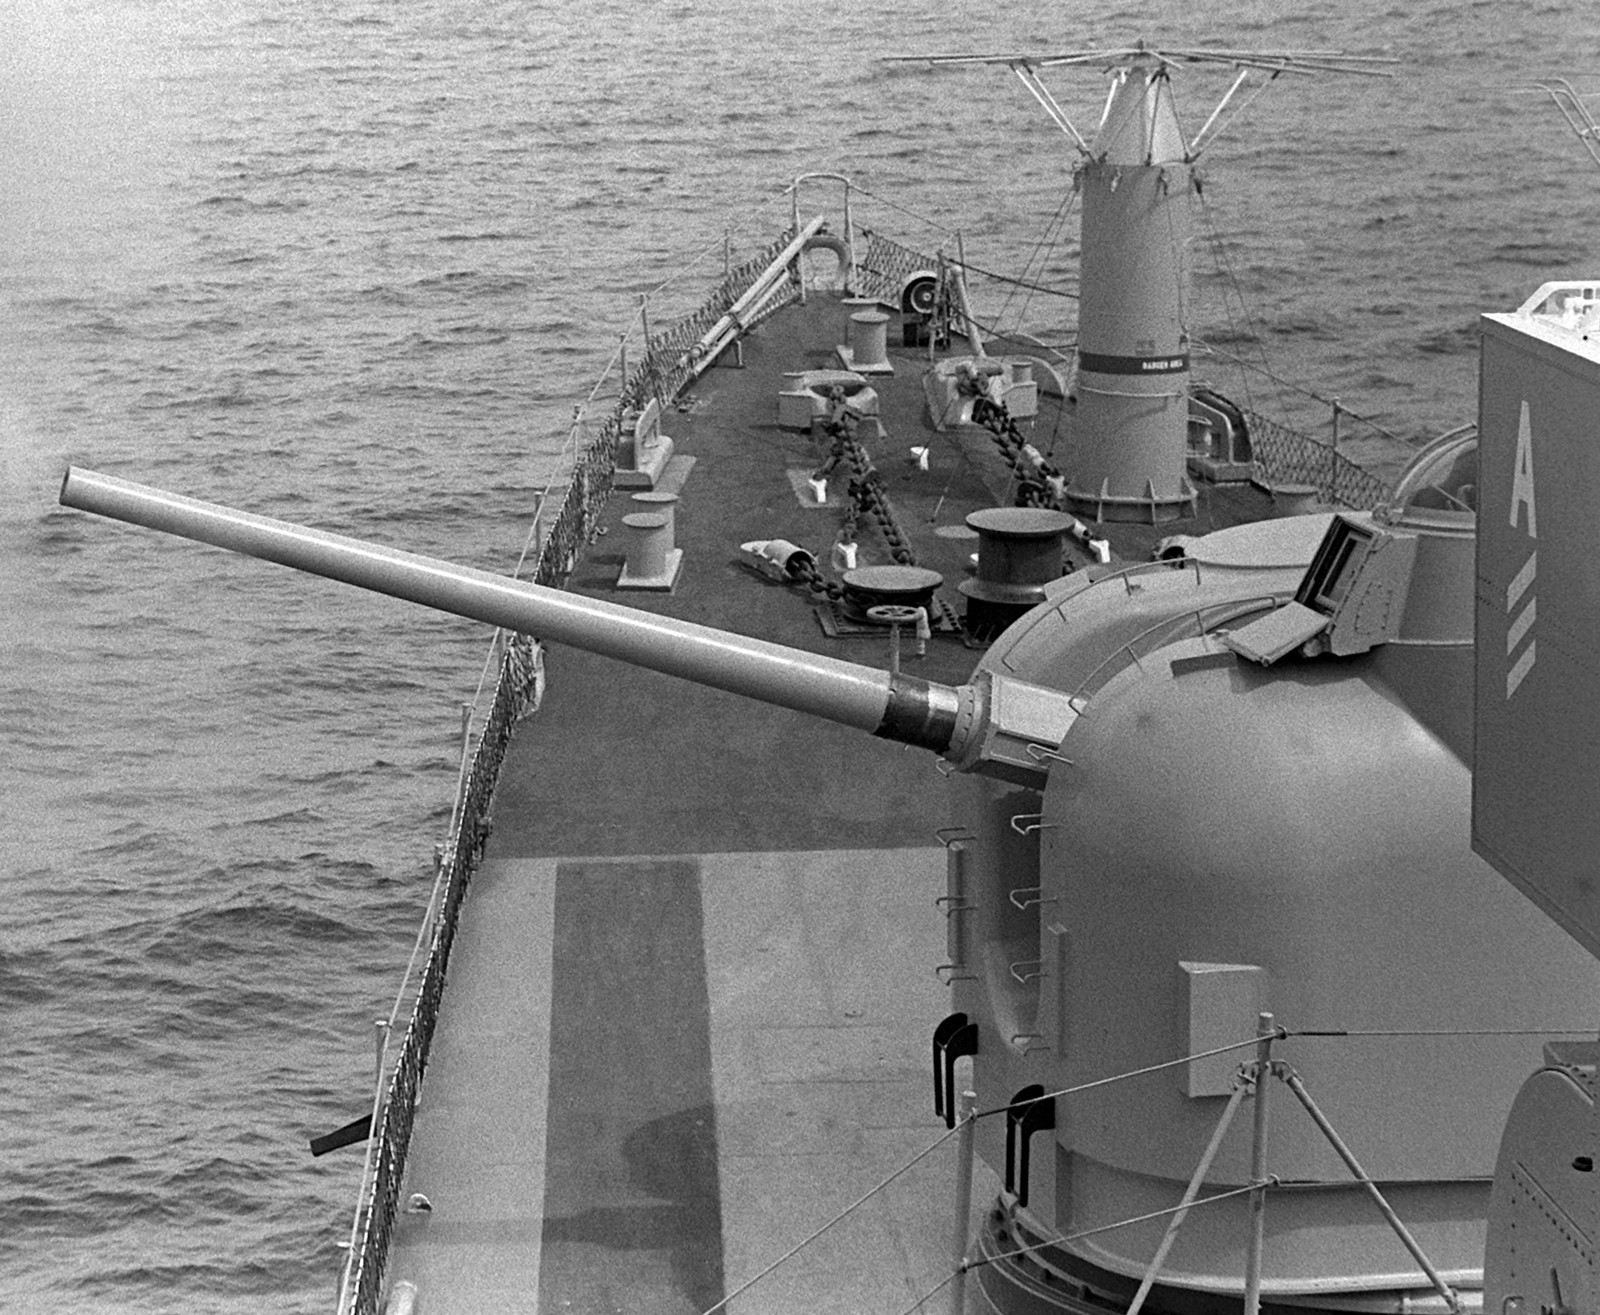 ddg-45 uss dewey farragut class destroyer us navy 1979 16 mk-42 5" 54 caliber gun